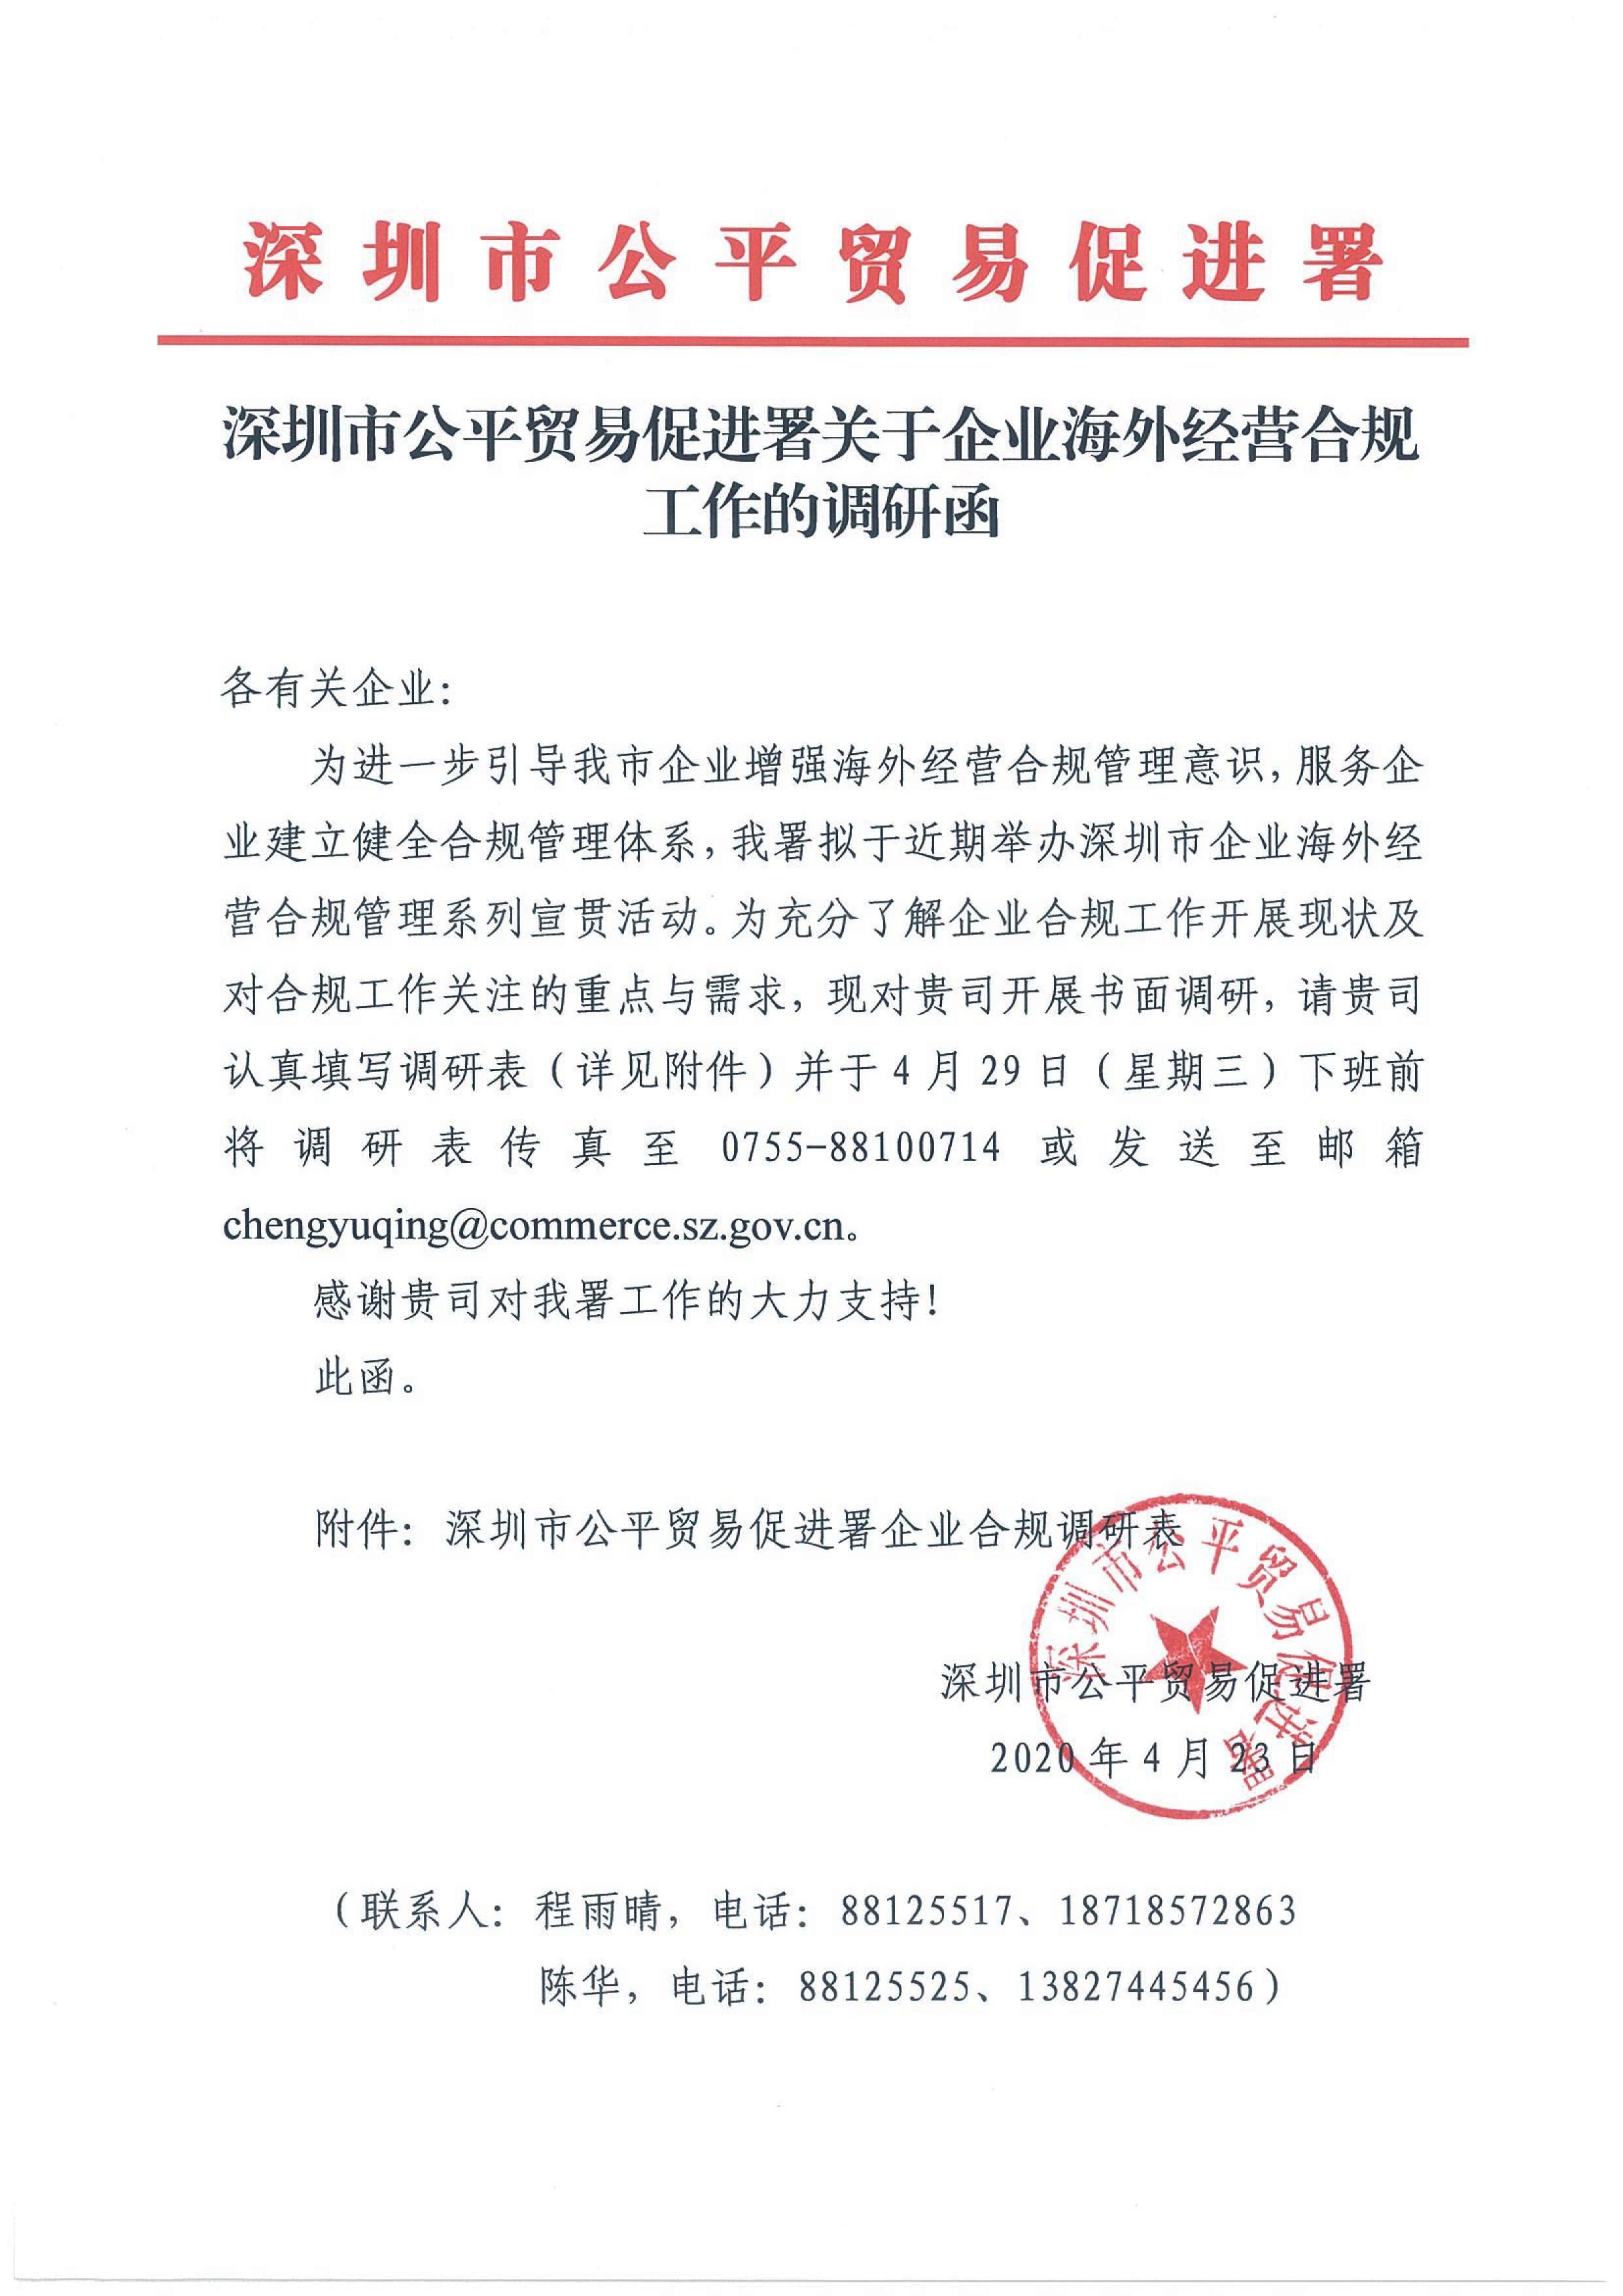 深圳市公平贸易促进署关于企业海外经营合规工作的调研函